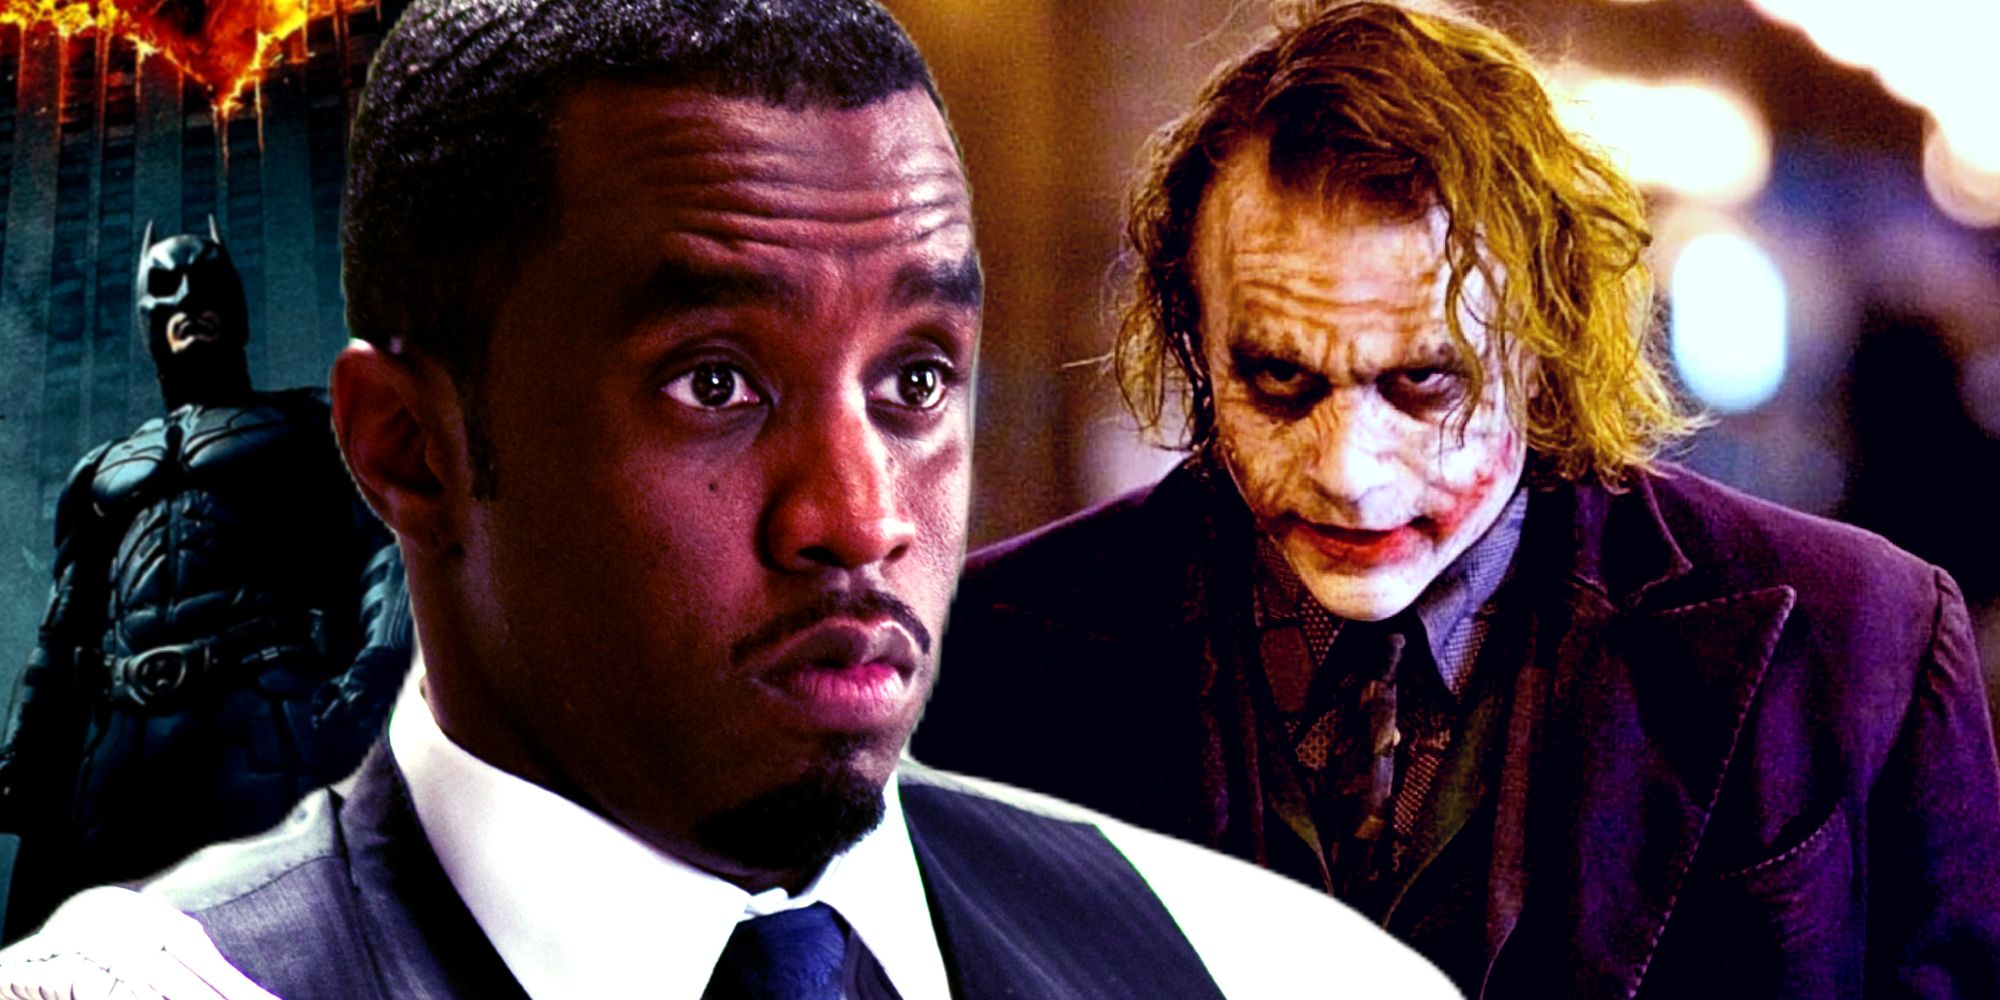 El rapero Diddy afirma que Warner Bros prohibió su increíble disfraz de Joker